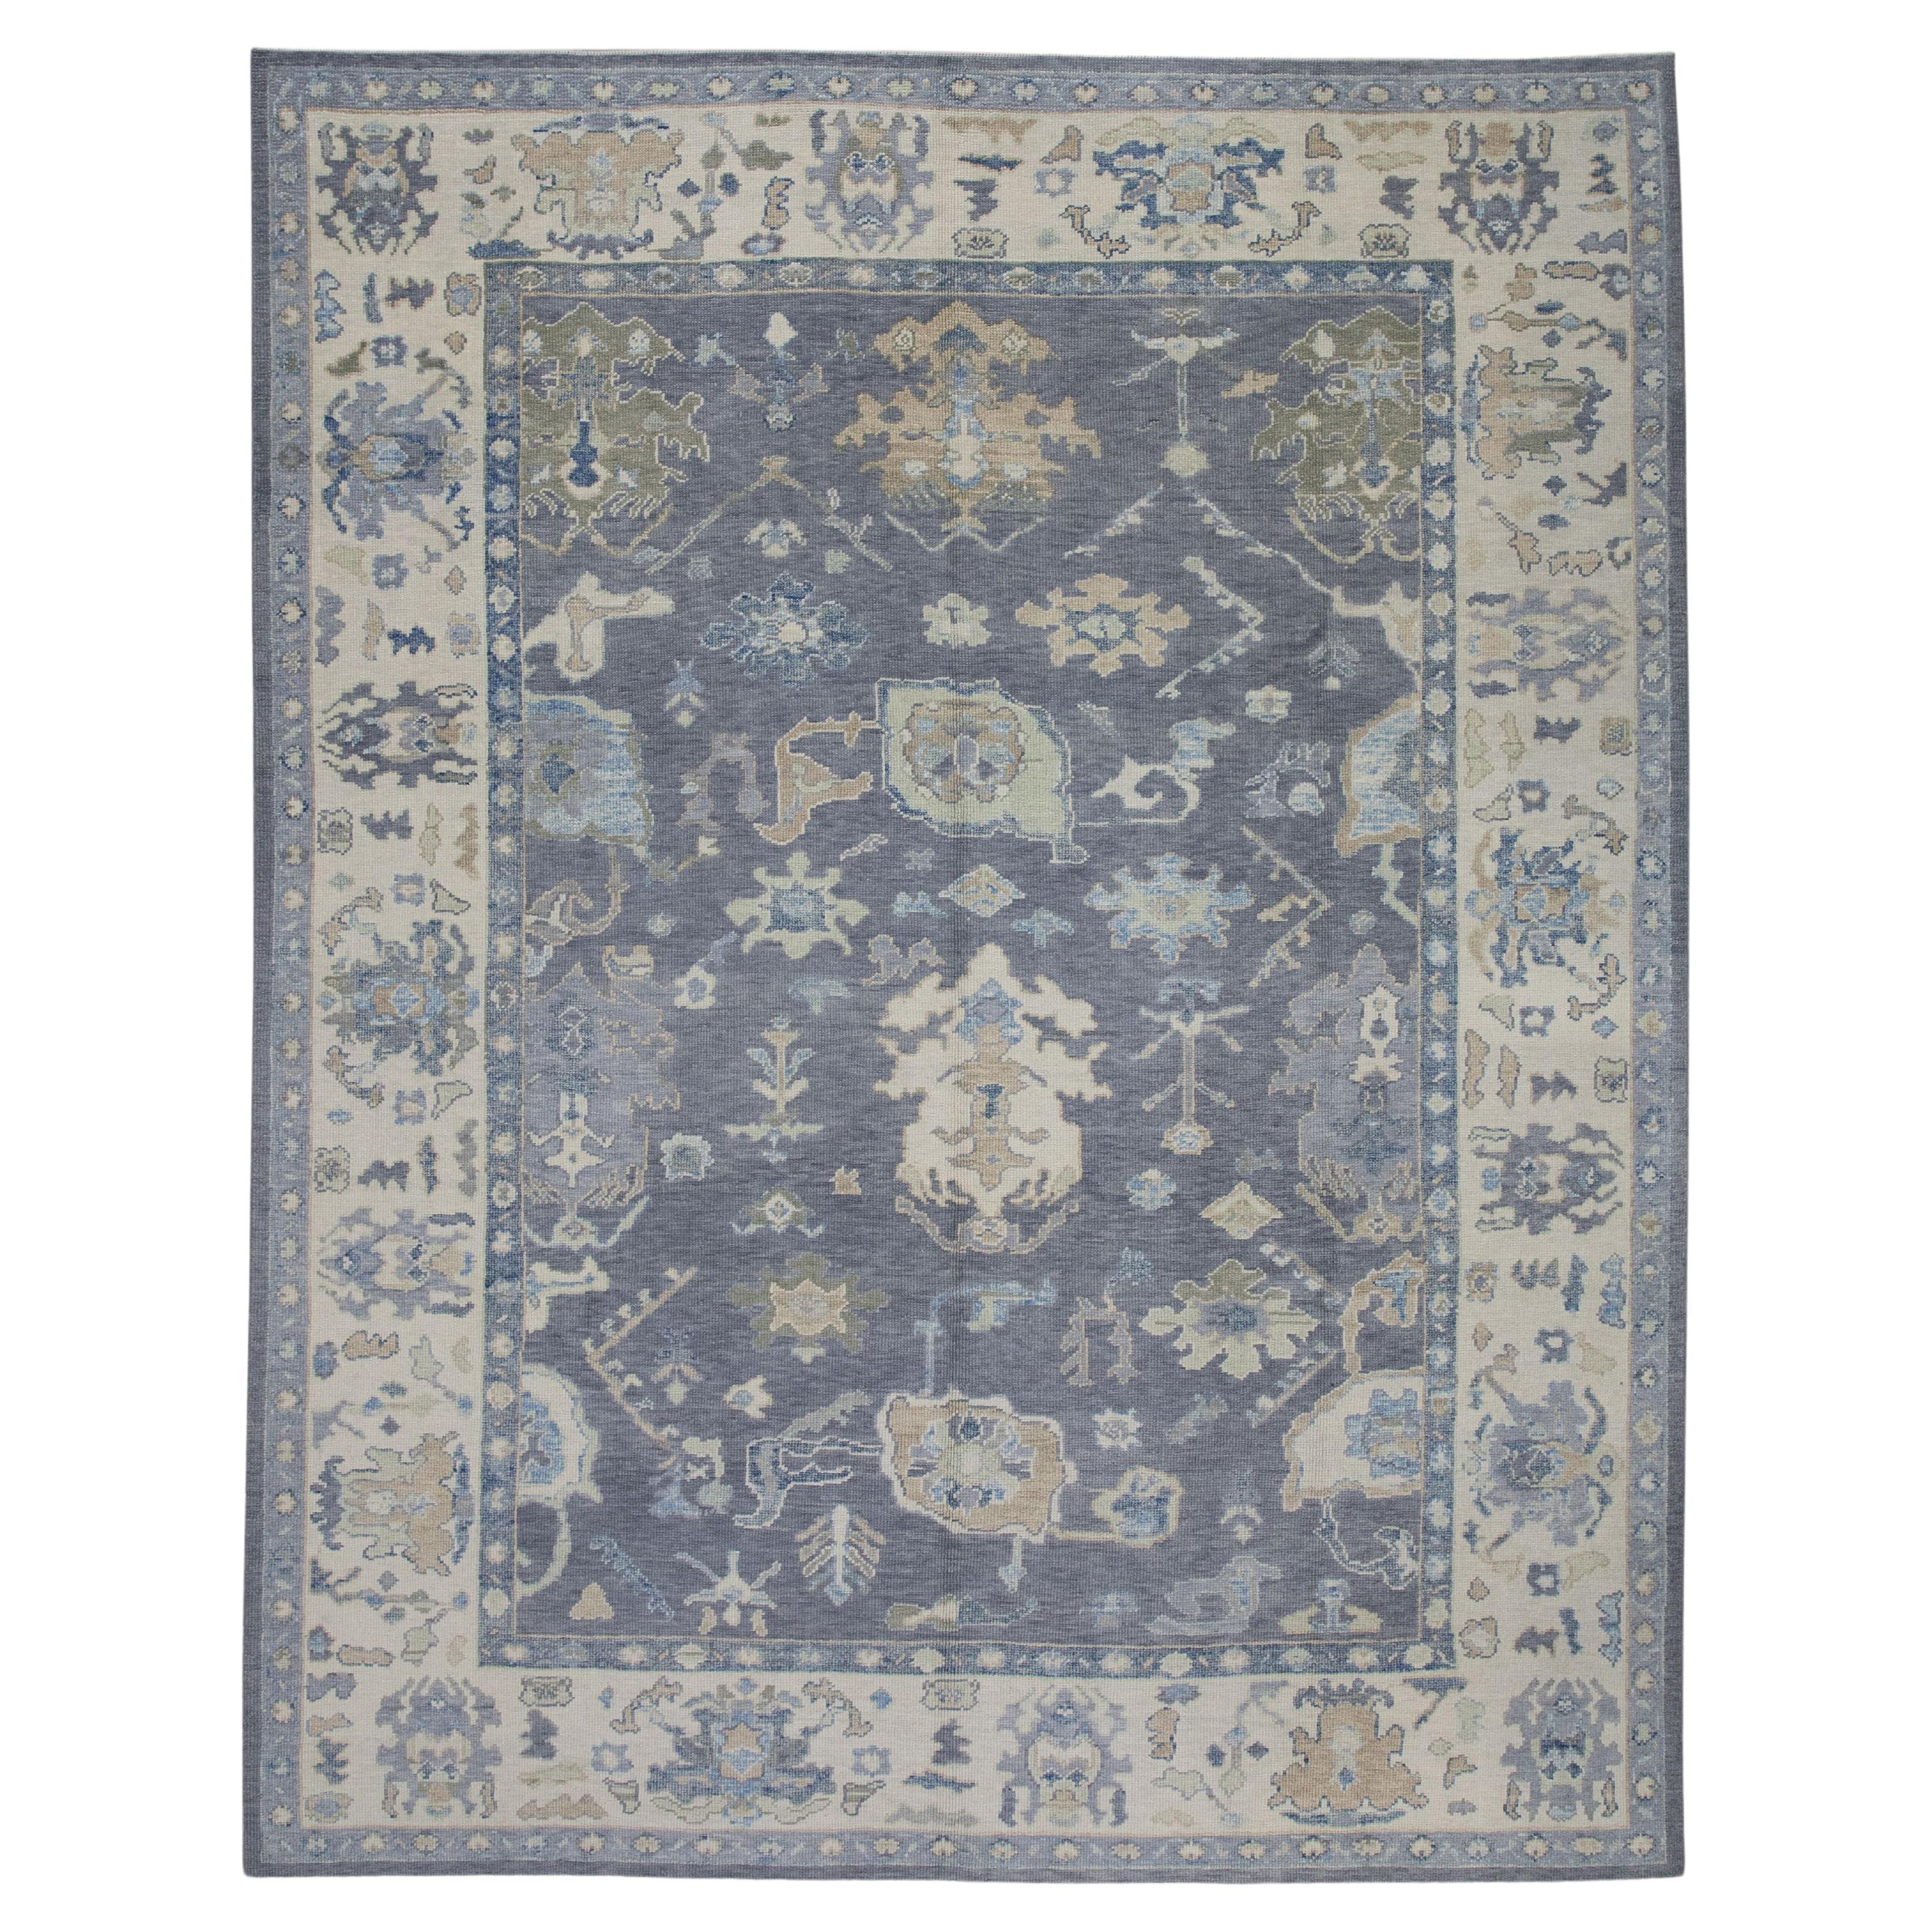 Tapis turc Oushak en laine à motifs floraux gris et bleus tissé à la main 8'9" X 11'5".